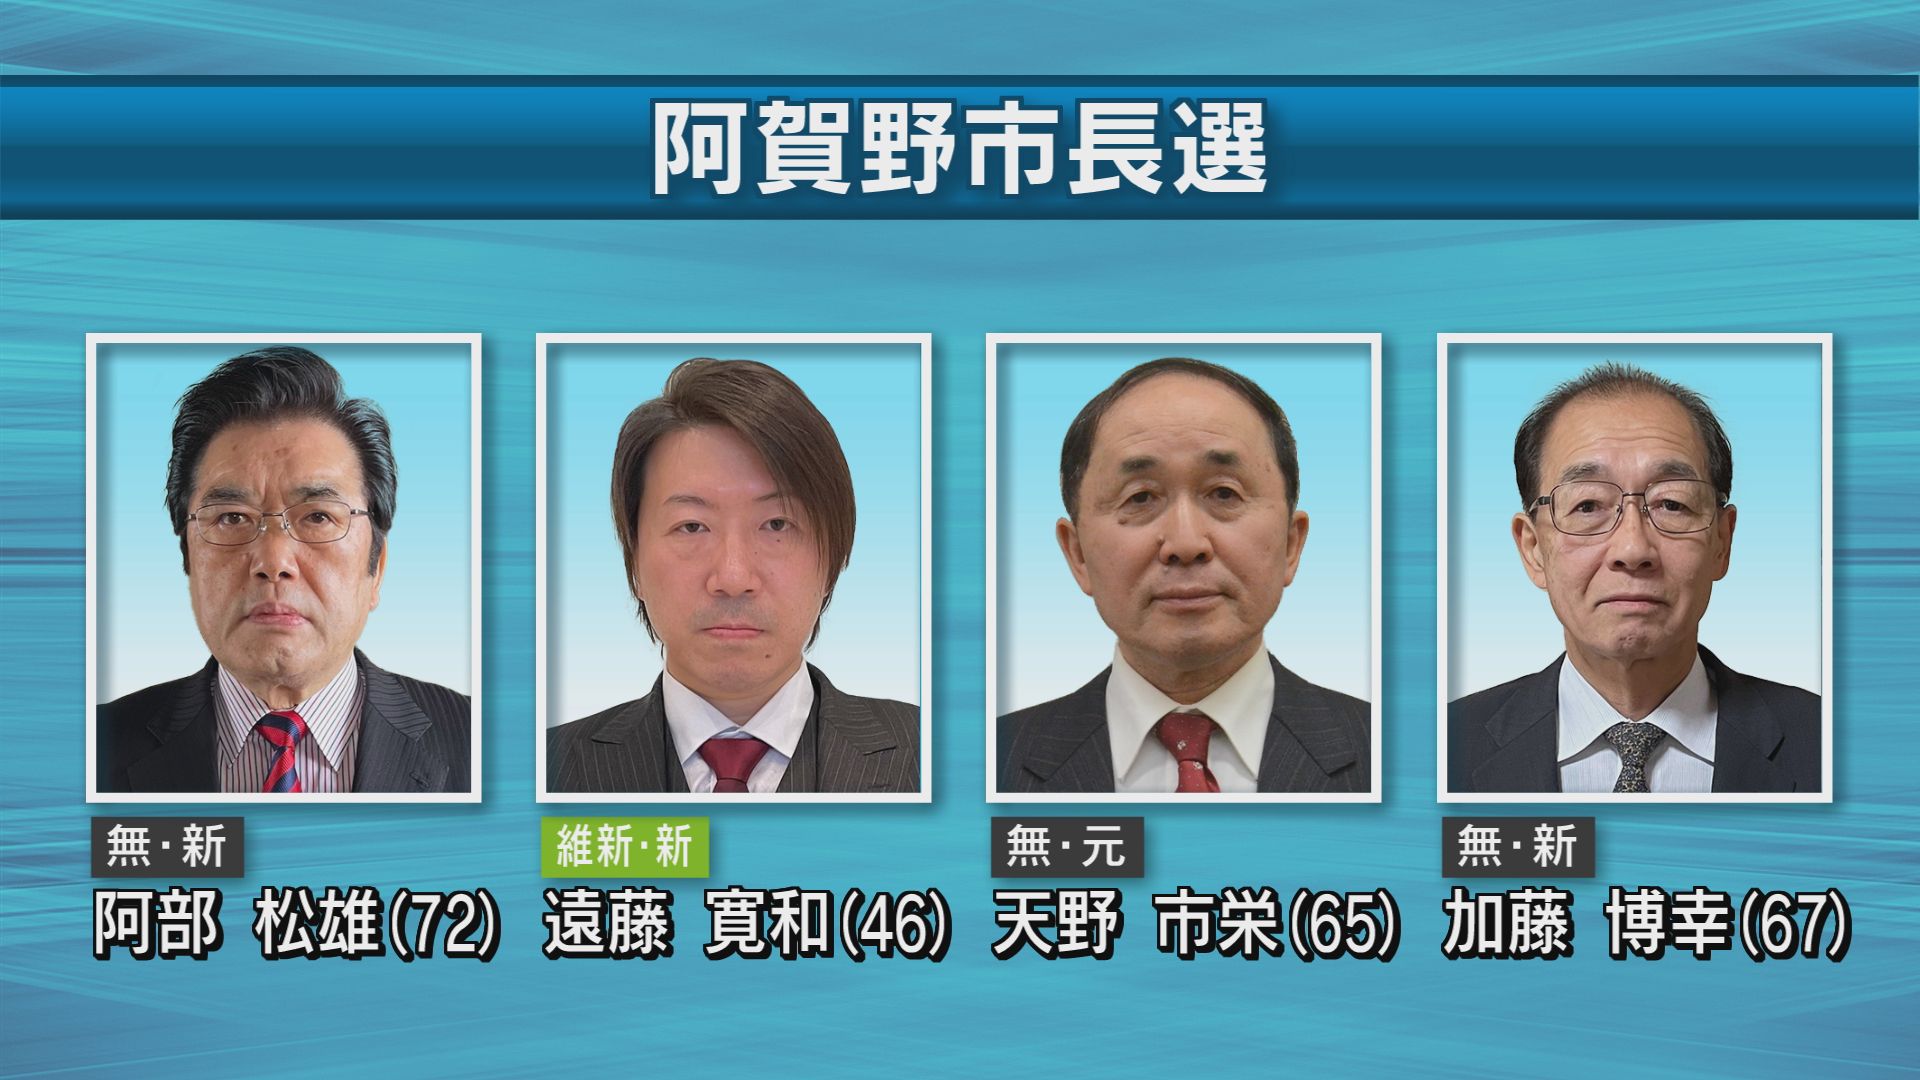 阿賀野市長選挙が告示 新人と元職の4人が立候補届け出 選挙戦始まる【新潟】